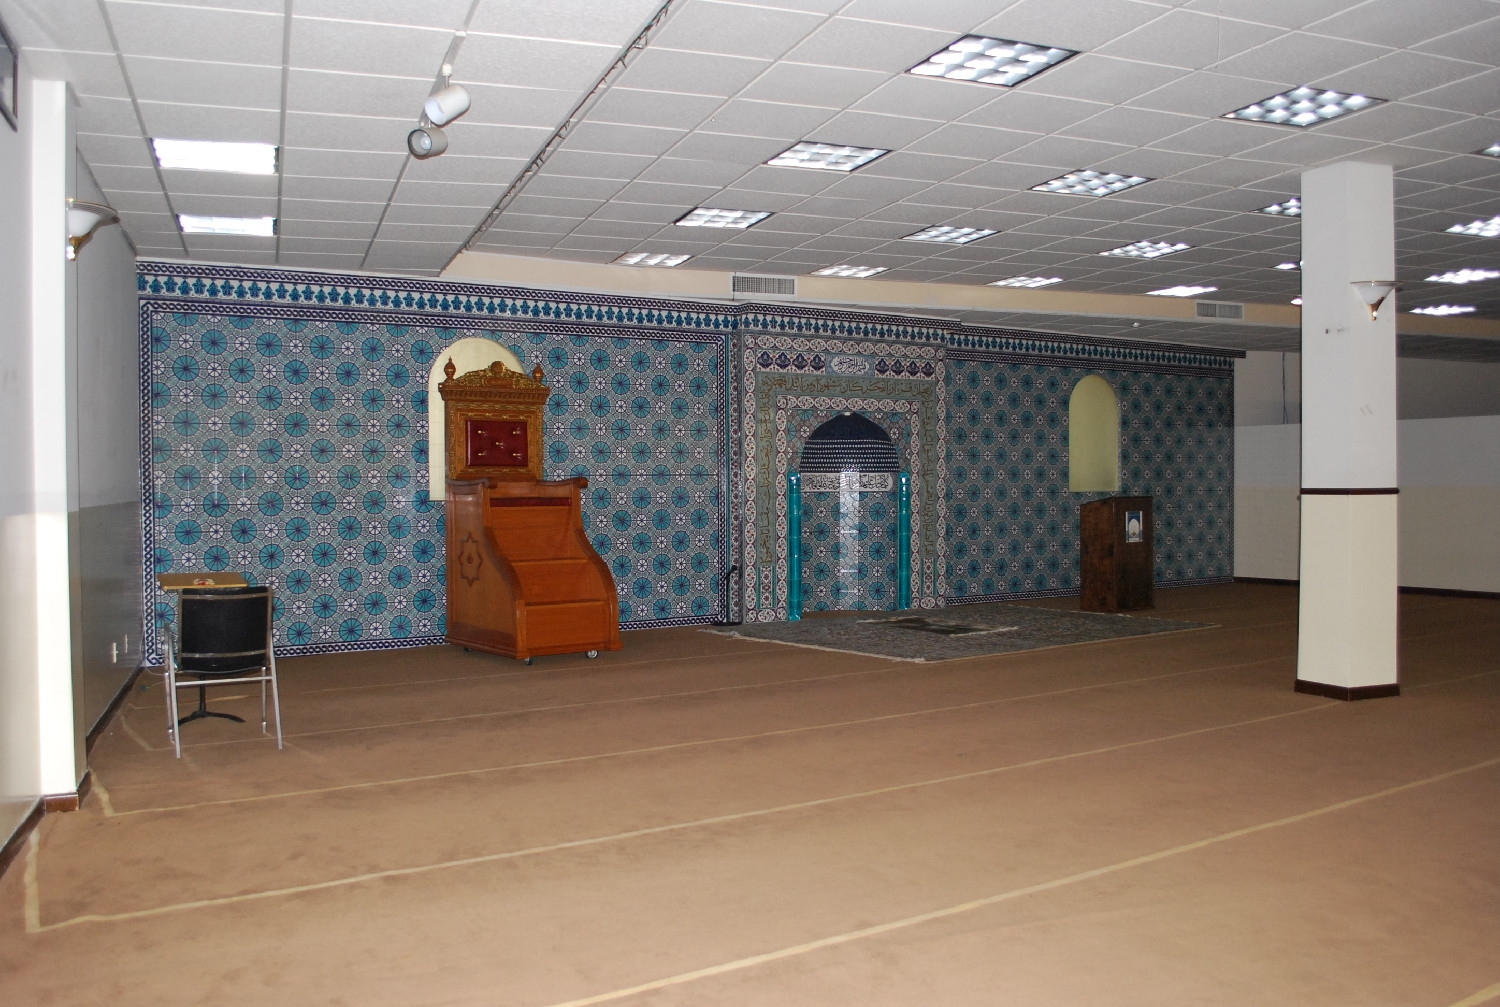 Main prayer hall, looking towards qibla wall